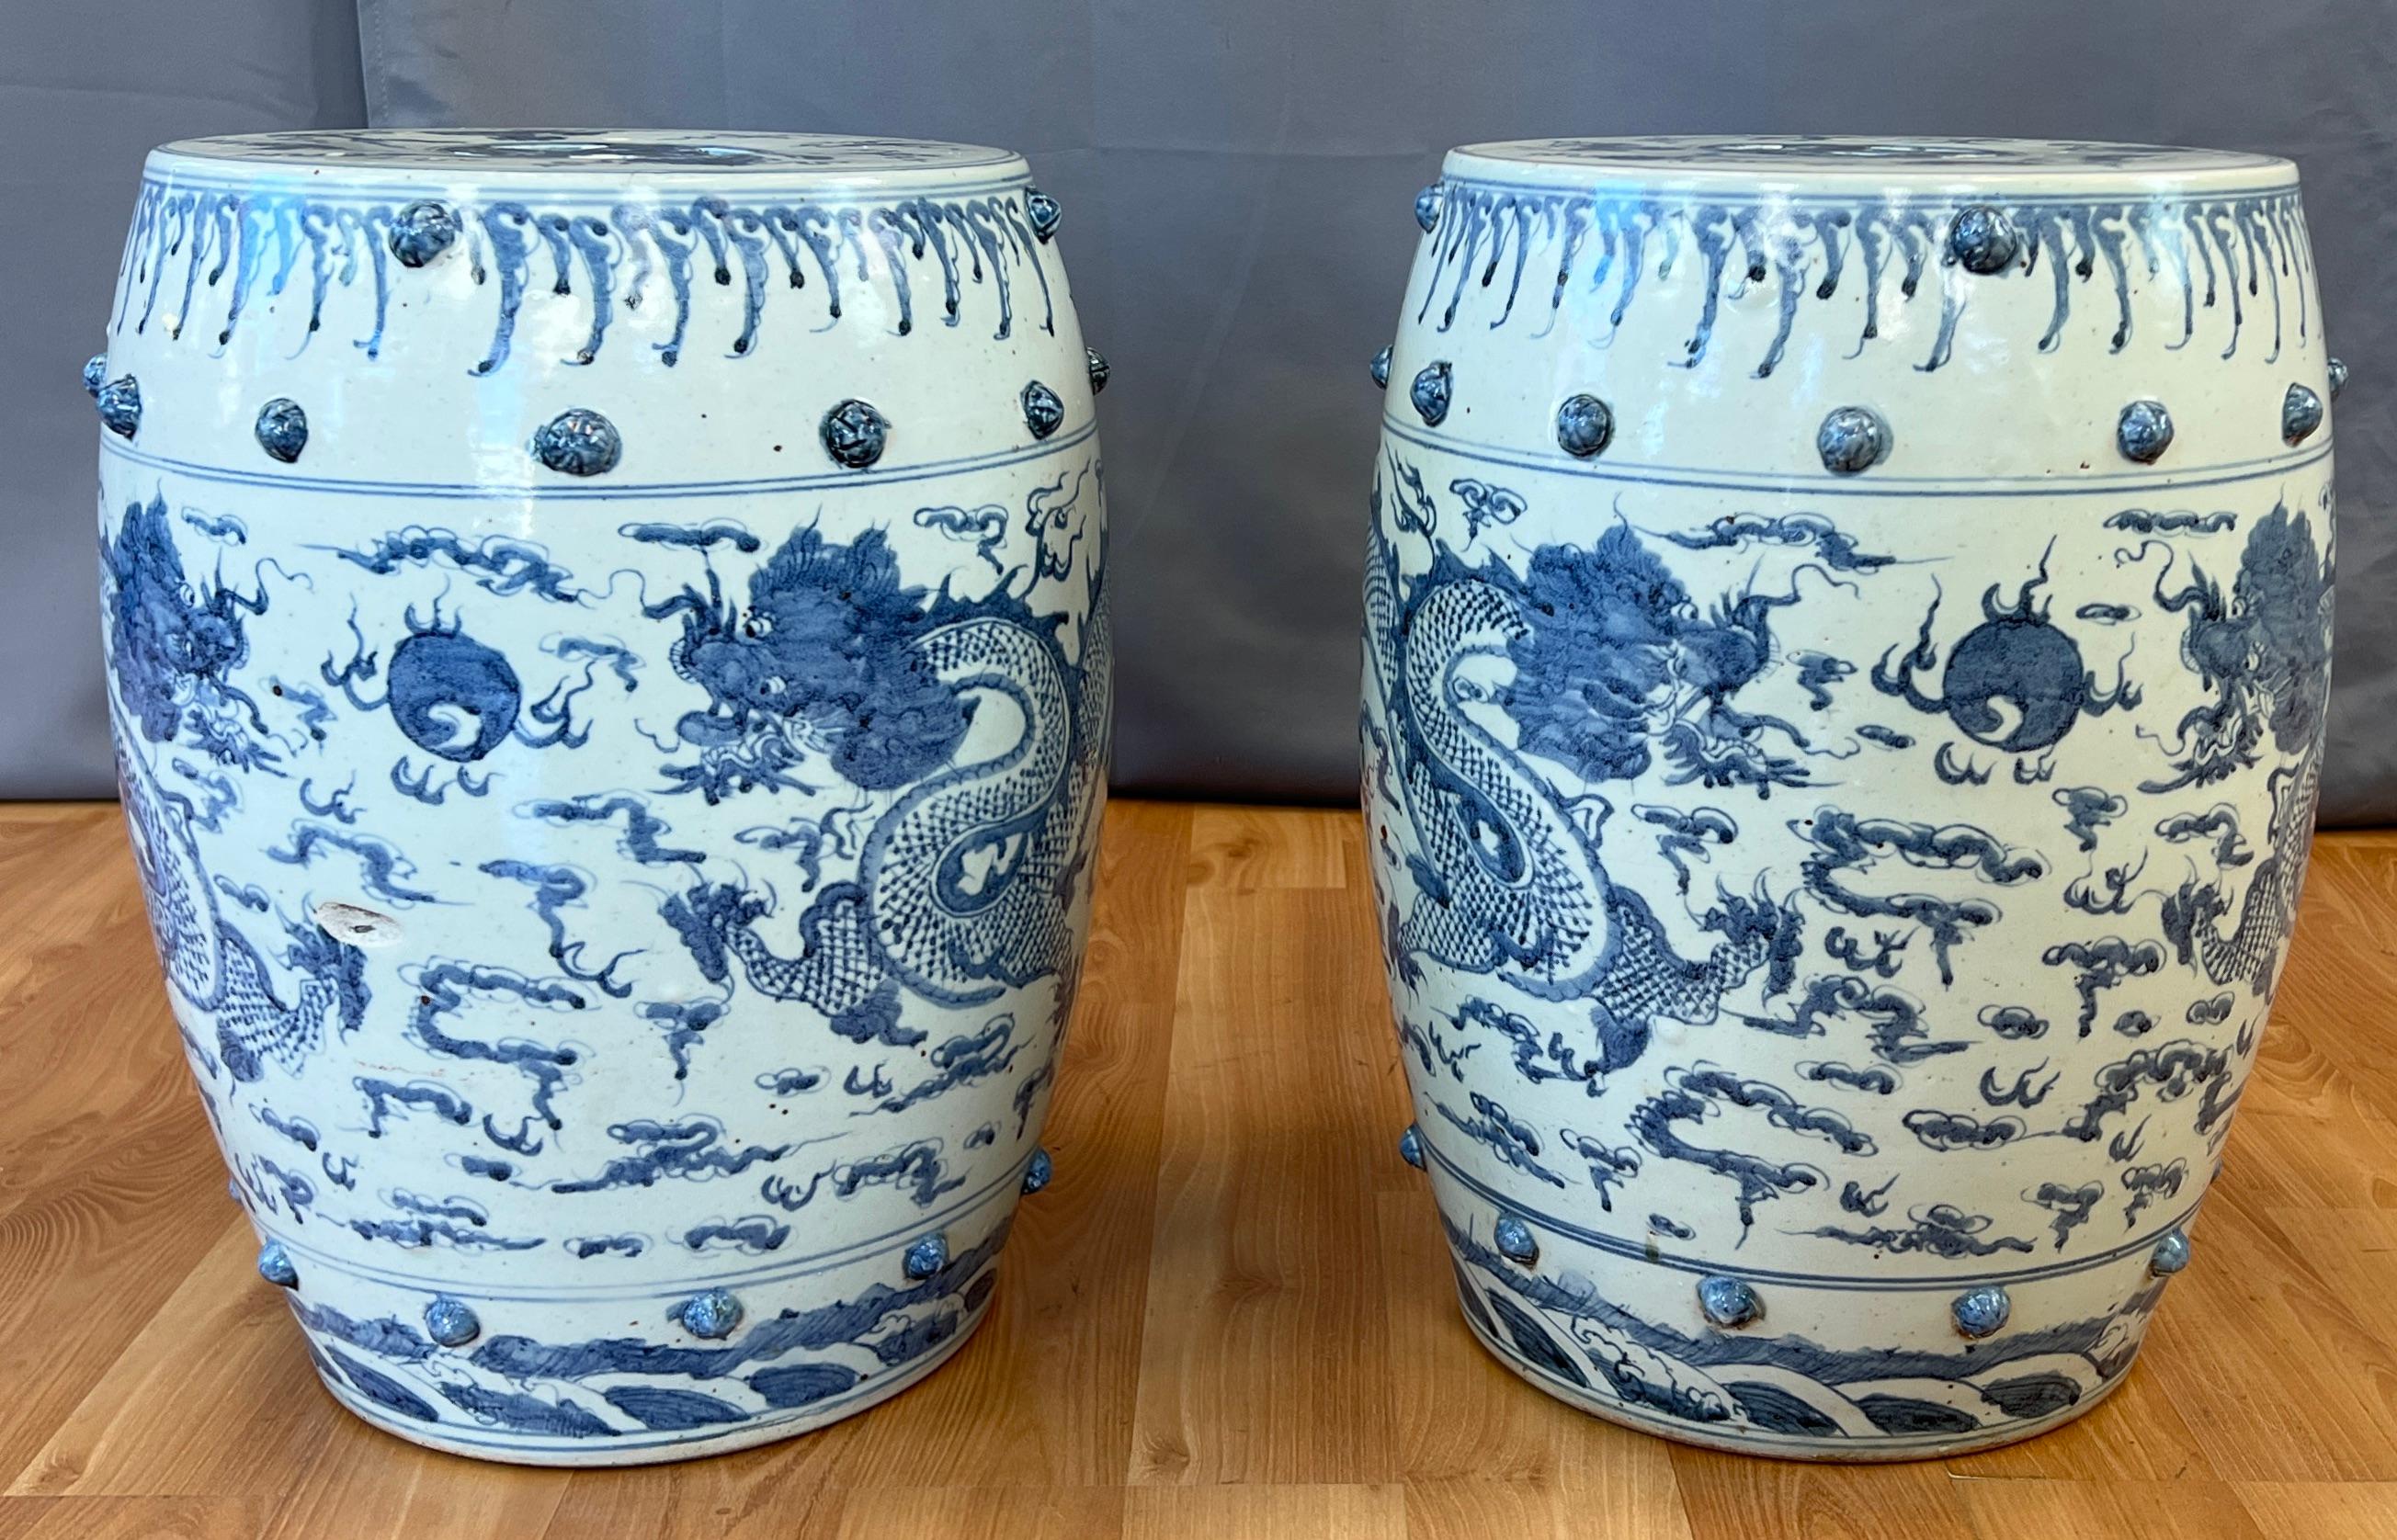 Angeboten wird hier ein Paar Gartenhocker aus Keramik, circa 19. Jahrhundert.
Beide haben ein Paar handgemalte Blaue Drachen an den Seiten, eine Reihe von erhöhten Noppen an der Ober- und Unterseite und die durchbrochene Oberseite beider Hocker.